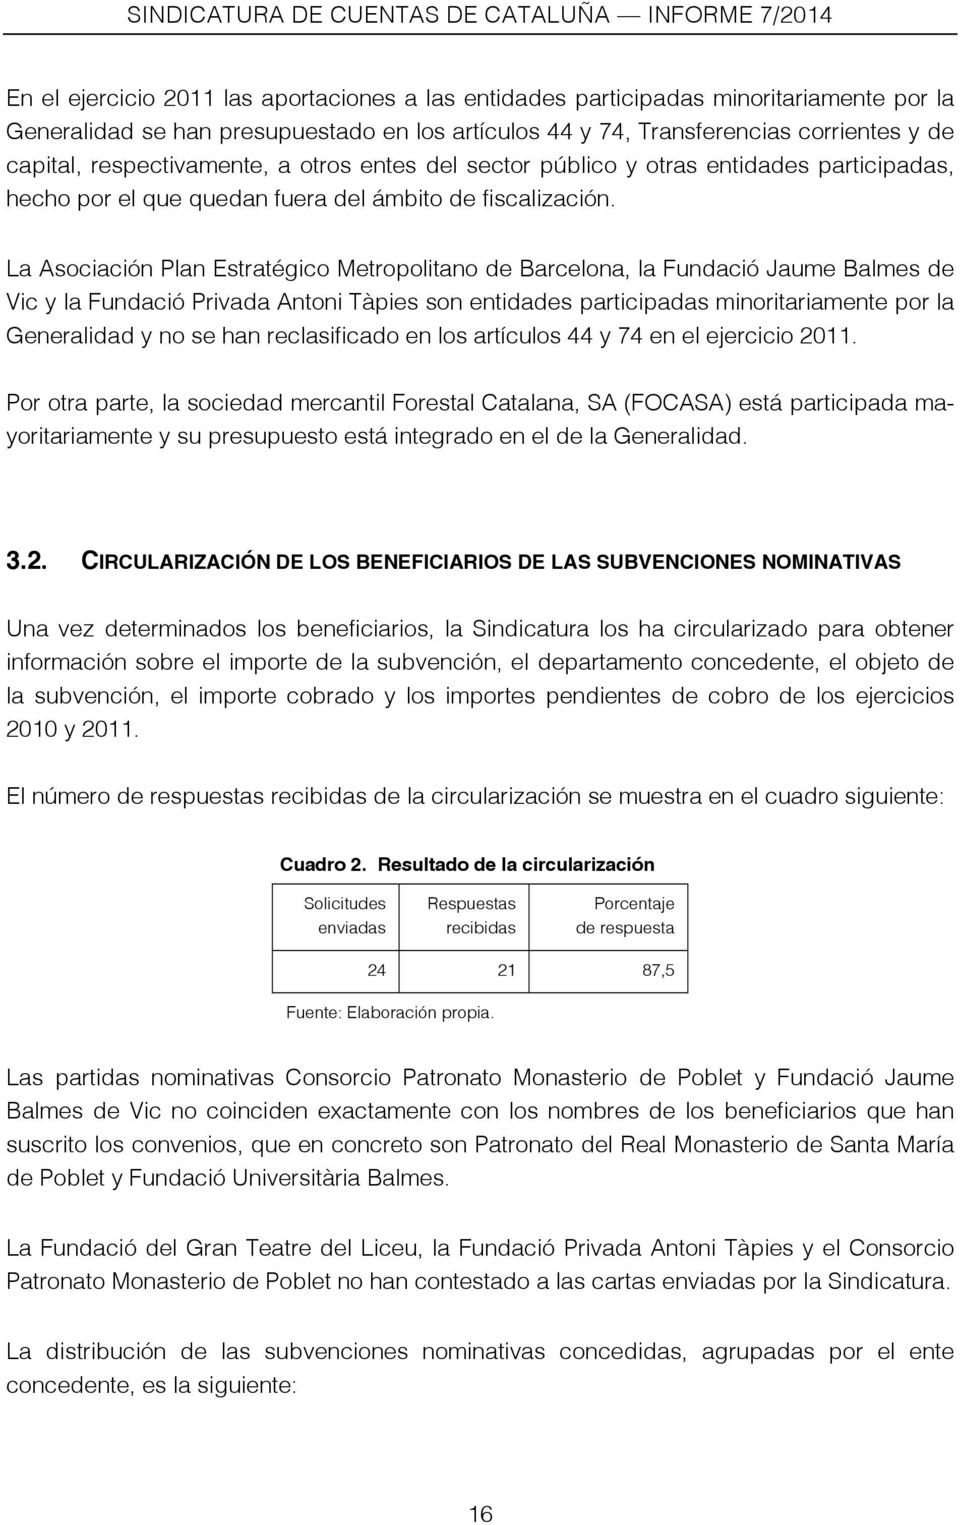 La Asociación Plan Estratégico Metropolitano de Barcelona, la Fundació Jaume Balmes de Vic y la Fundació Privada Antoni Tàpies son entidades participadas minoritariamente por la Generalidad y no se